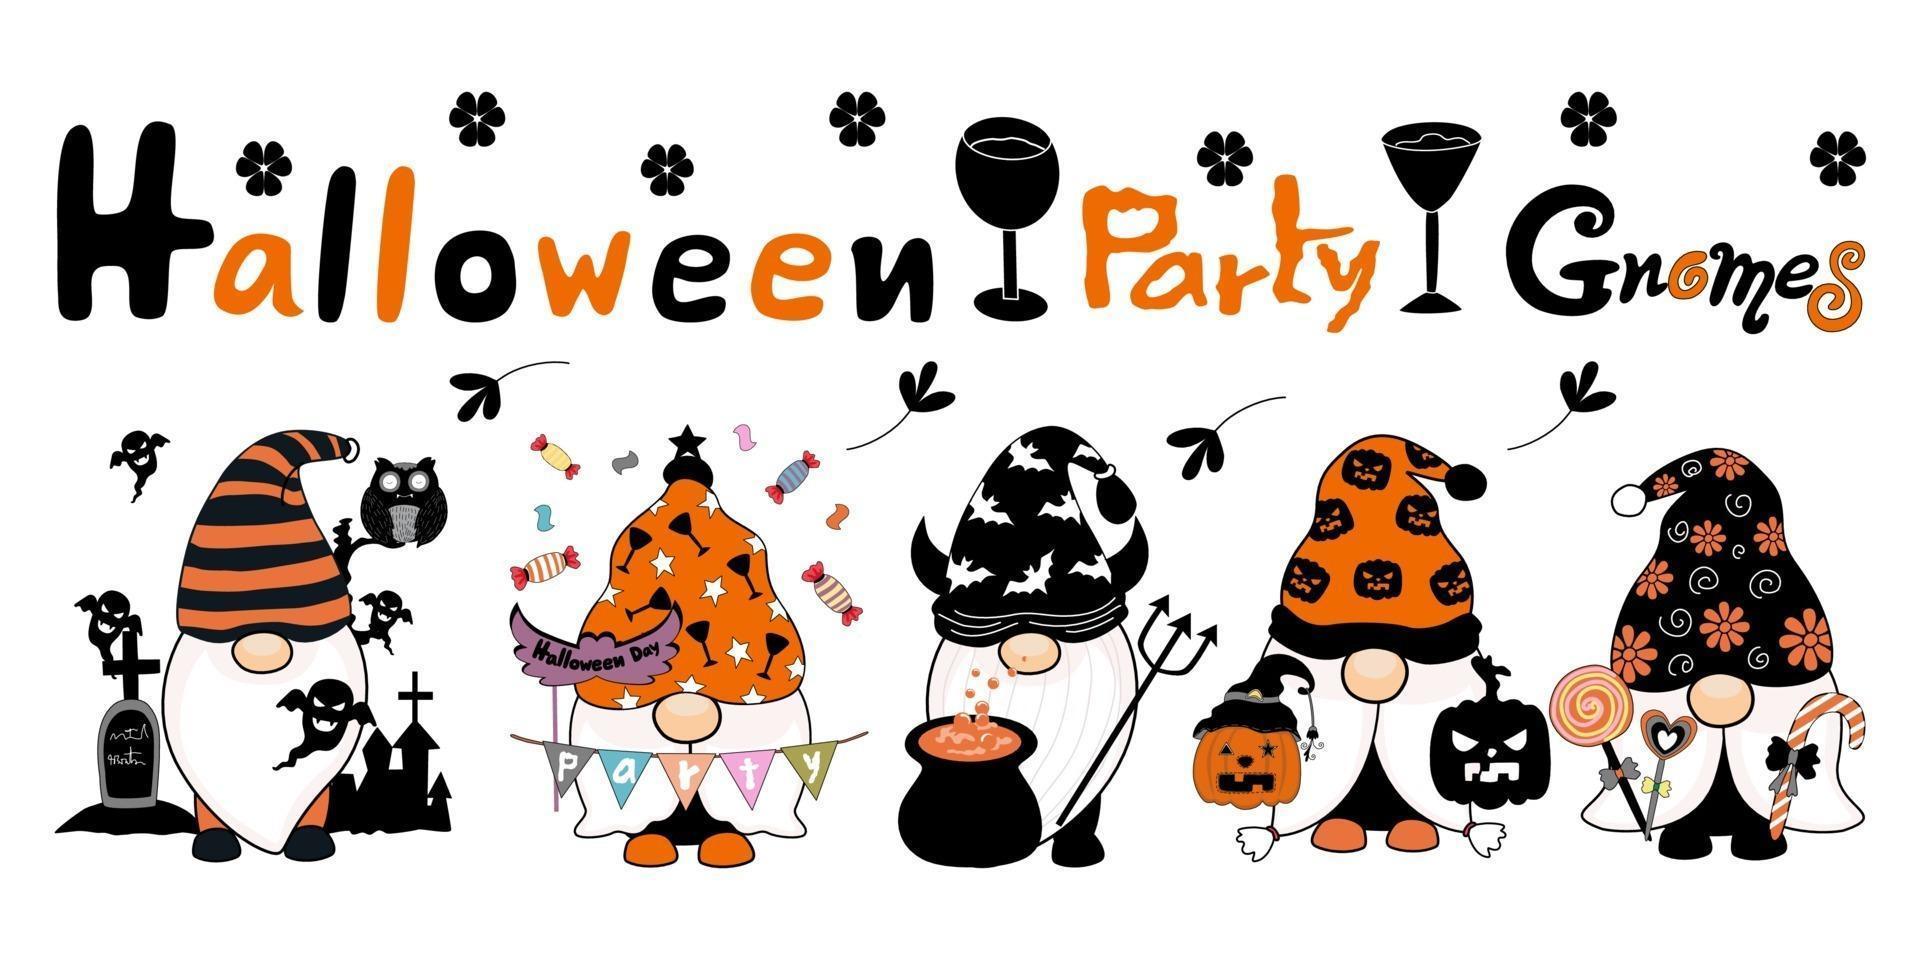 fiesta de halloween lindos gnomos diseñados en tono naranja blanco y negro vector